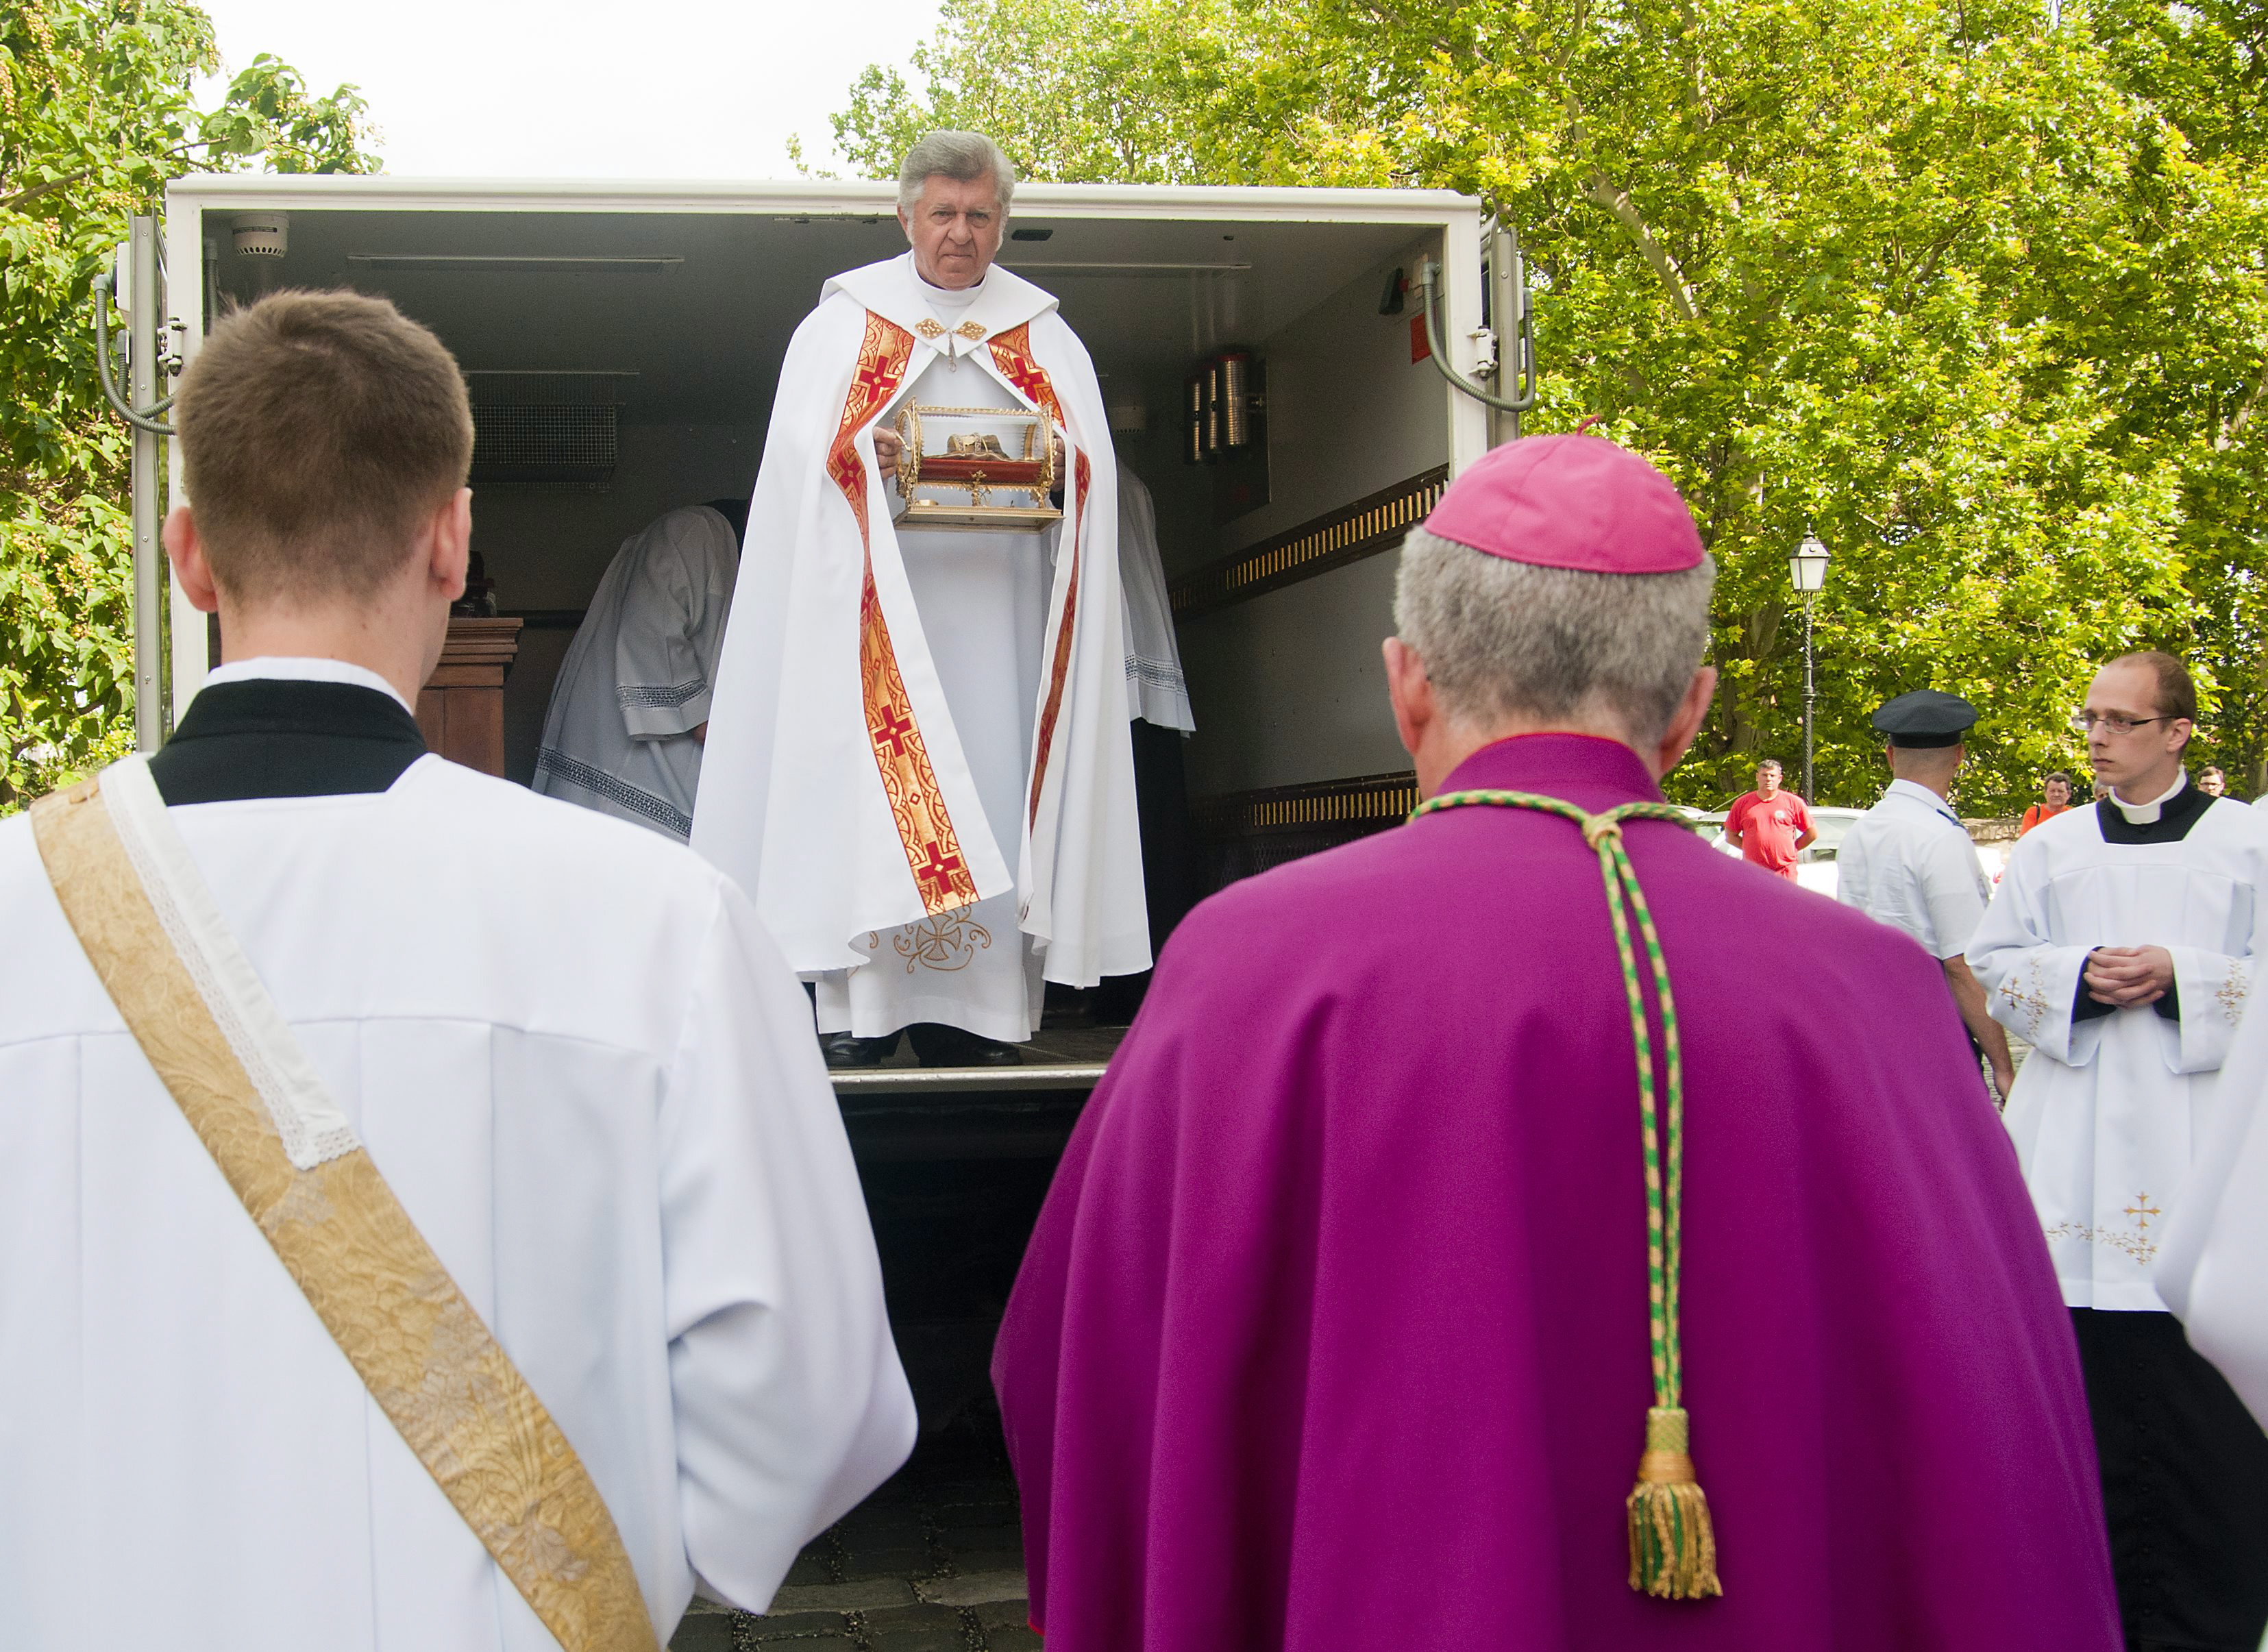 Snell György, a Szent István-bazilika plébánosa emeli ki egy páncélozott járműből a Szent Jobbot a győri bazilika előtt 2012-ben